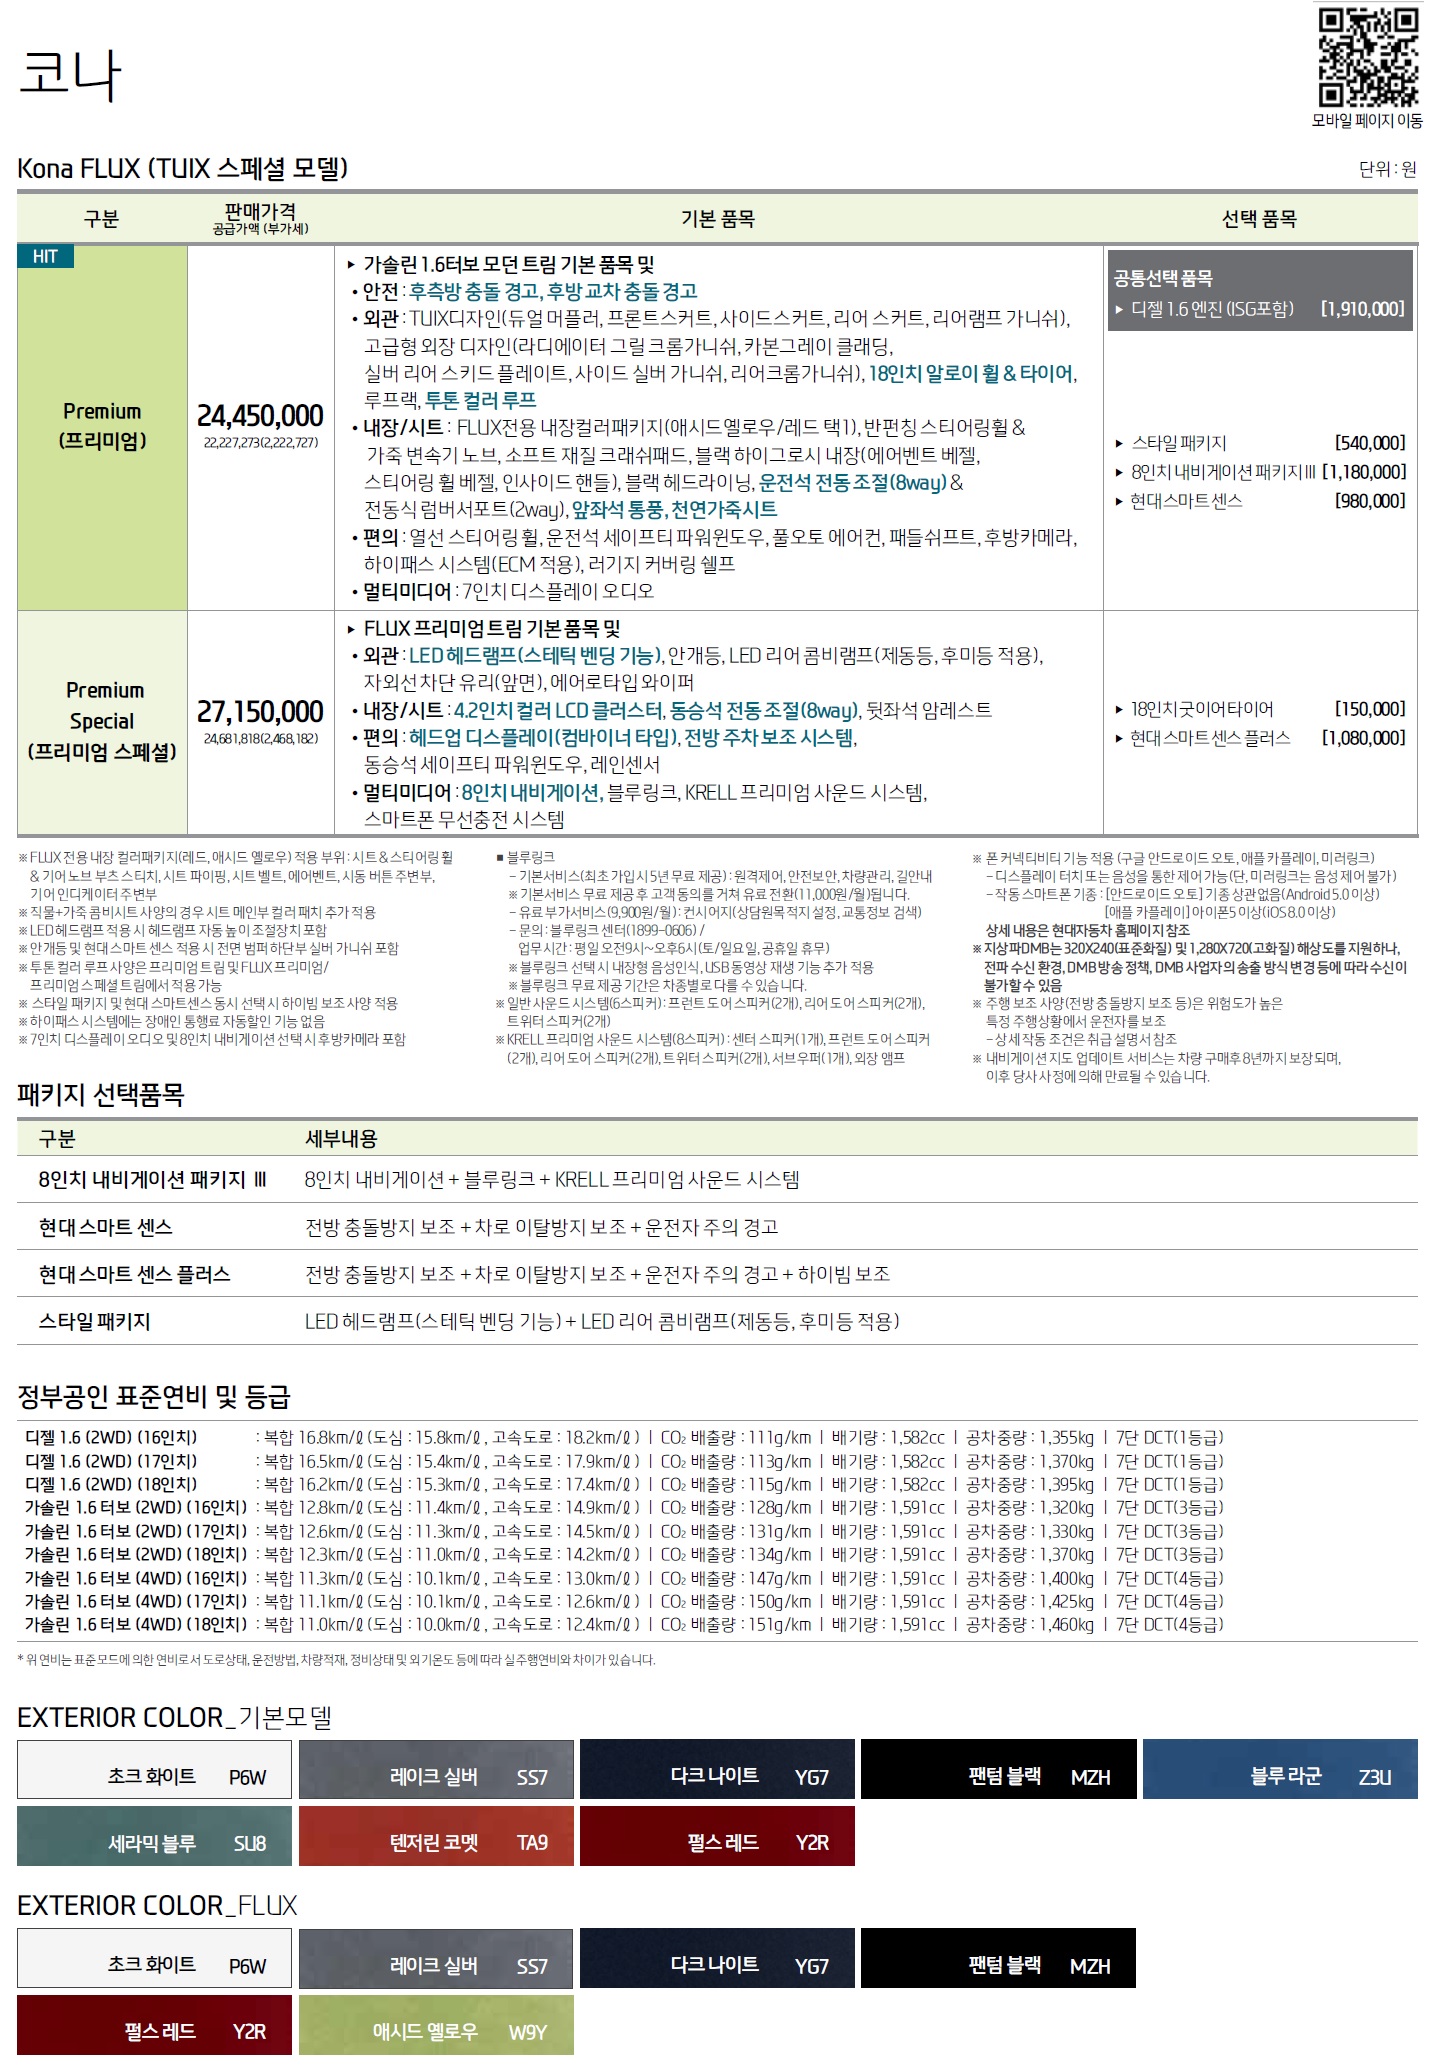 코나 가격표 - 2019년 01월 -3.jpg